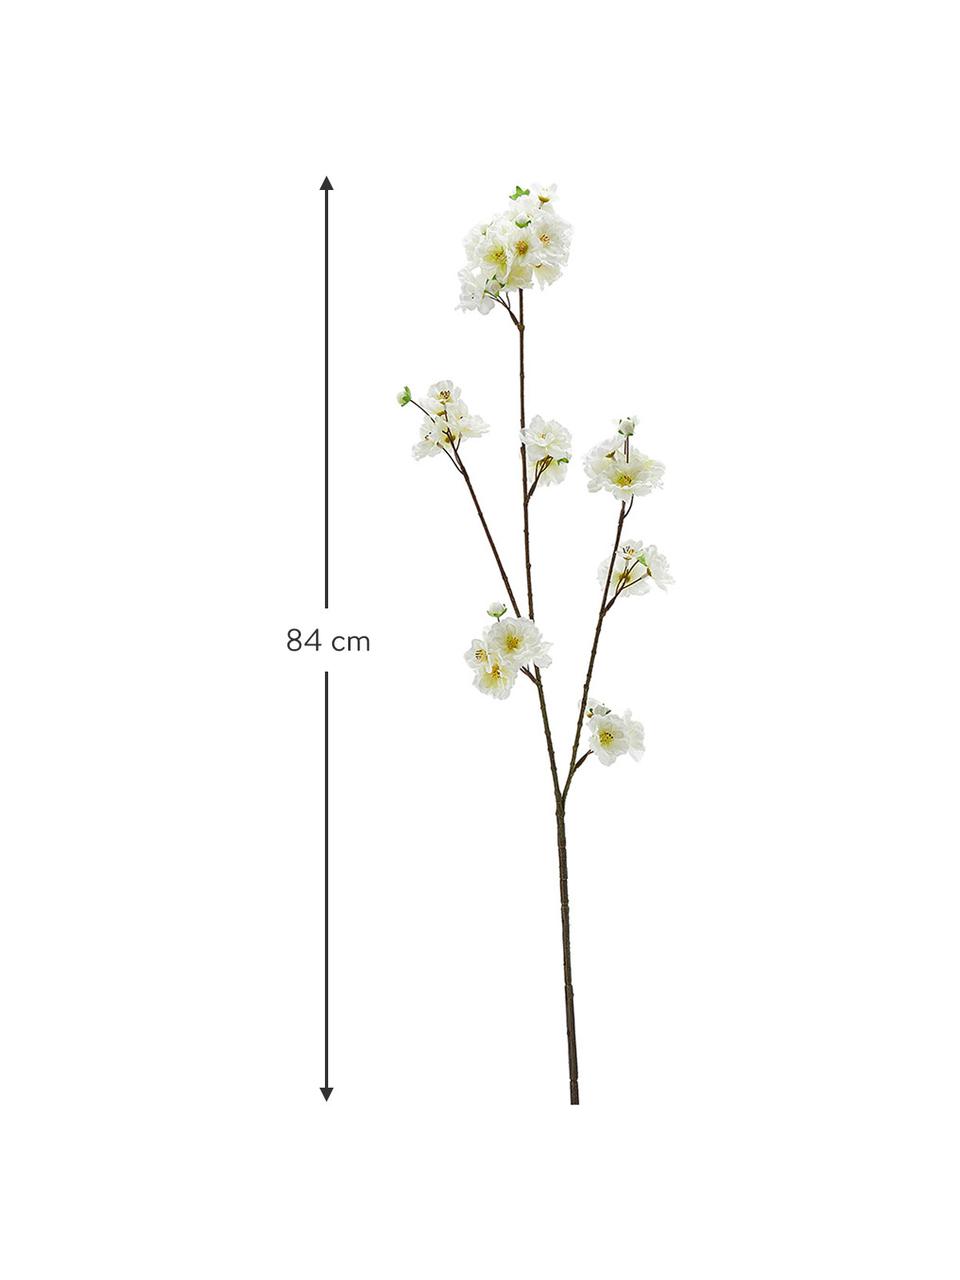 Dekoracyjne kwiaty wiśni, Tworzywo sztuczne, Biały, żółty, brązowy, D 84 cm